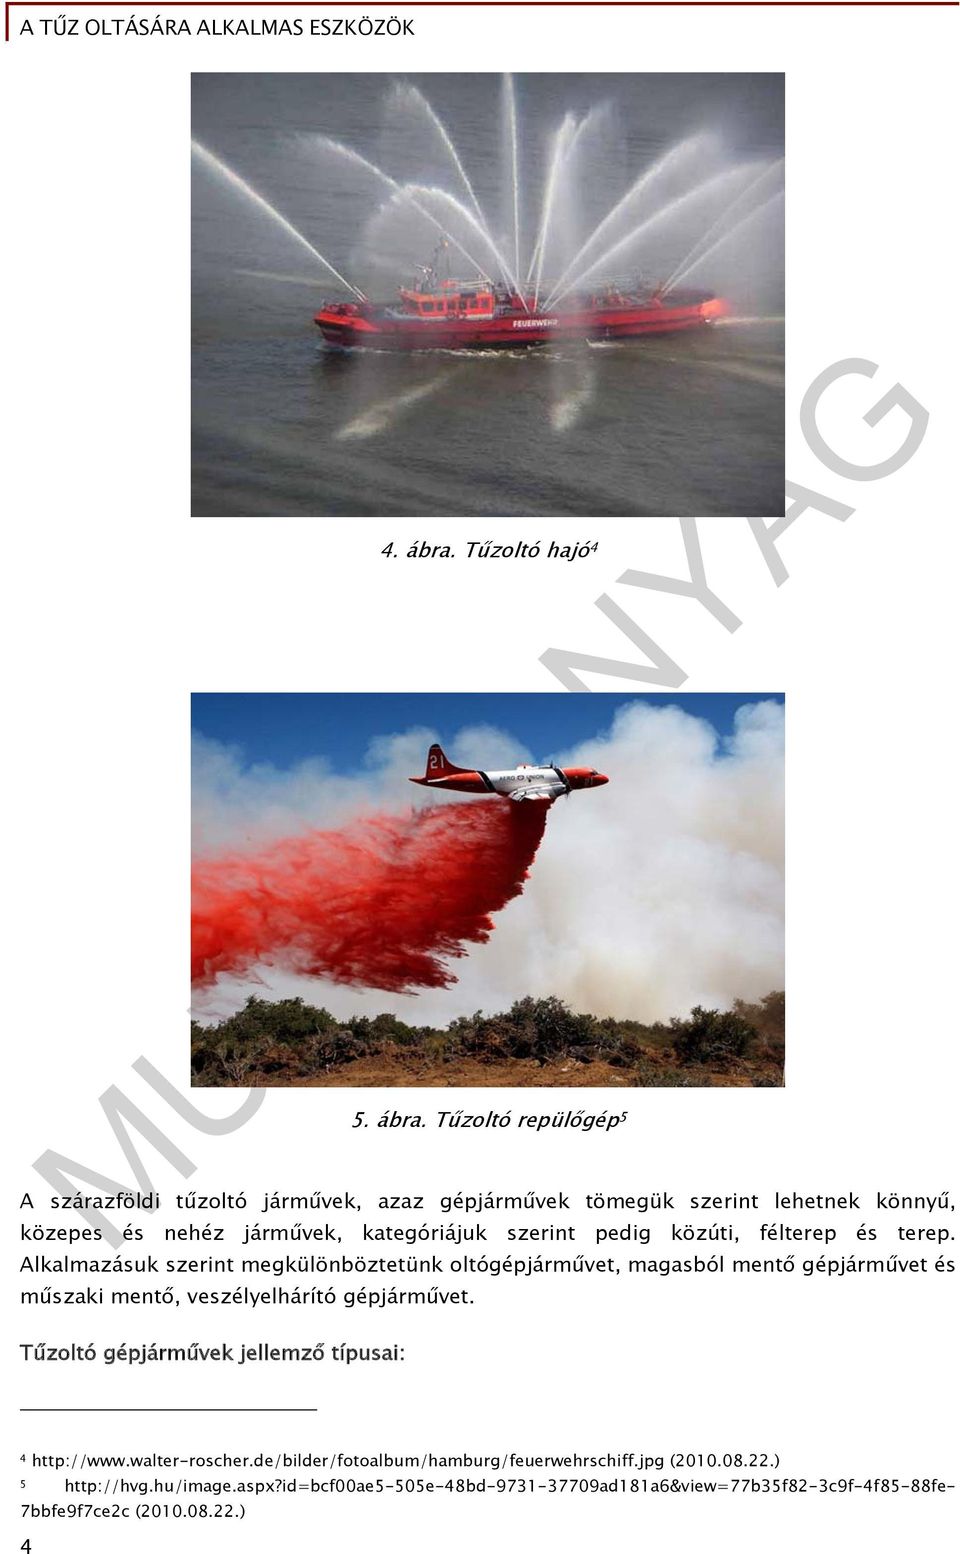 Tűzoltó repülőgép 5 A szárazföldi tűzoltó járművek, azaz gépjárművek tömegük szerint lehetnek könnyű, közepes és nehéz járművek, kategóriájuk szerint